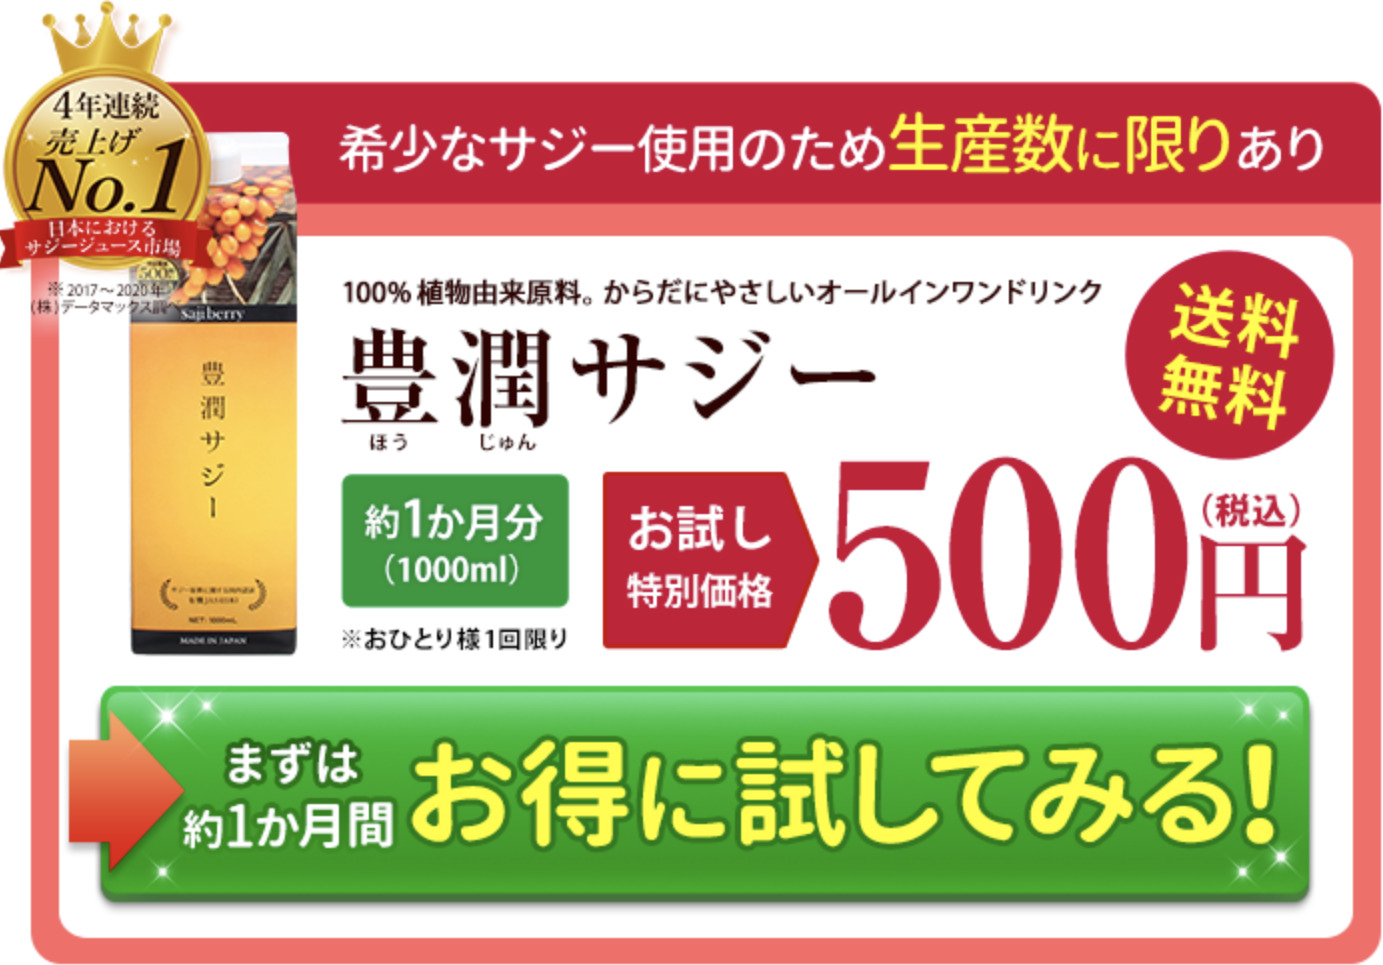 豊潤サジー500円